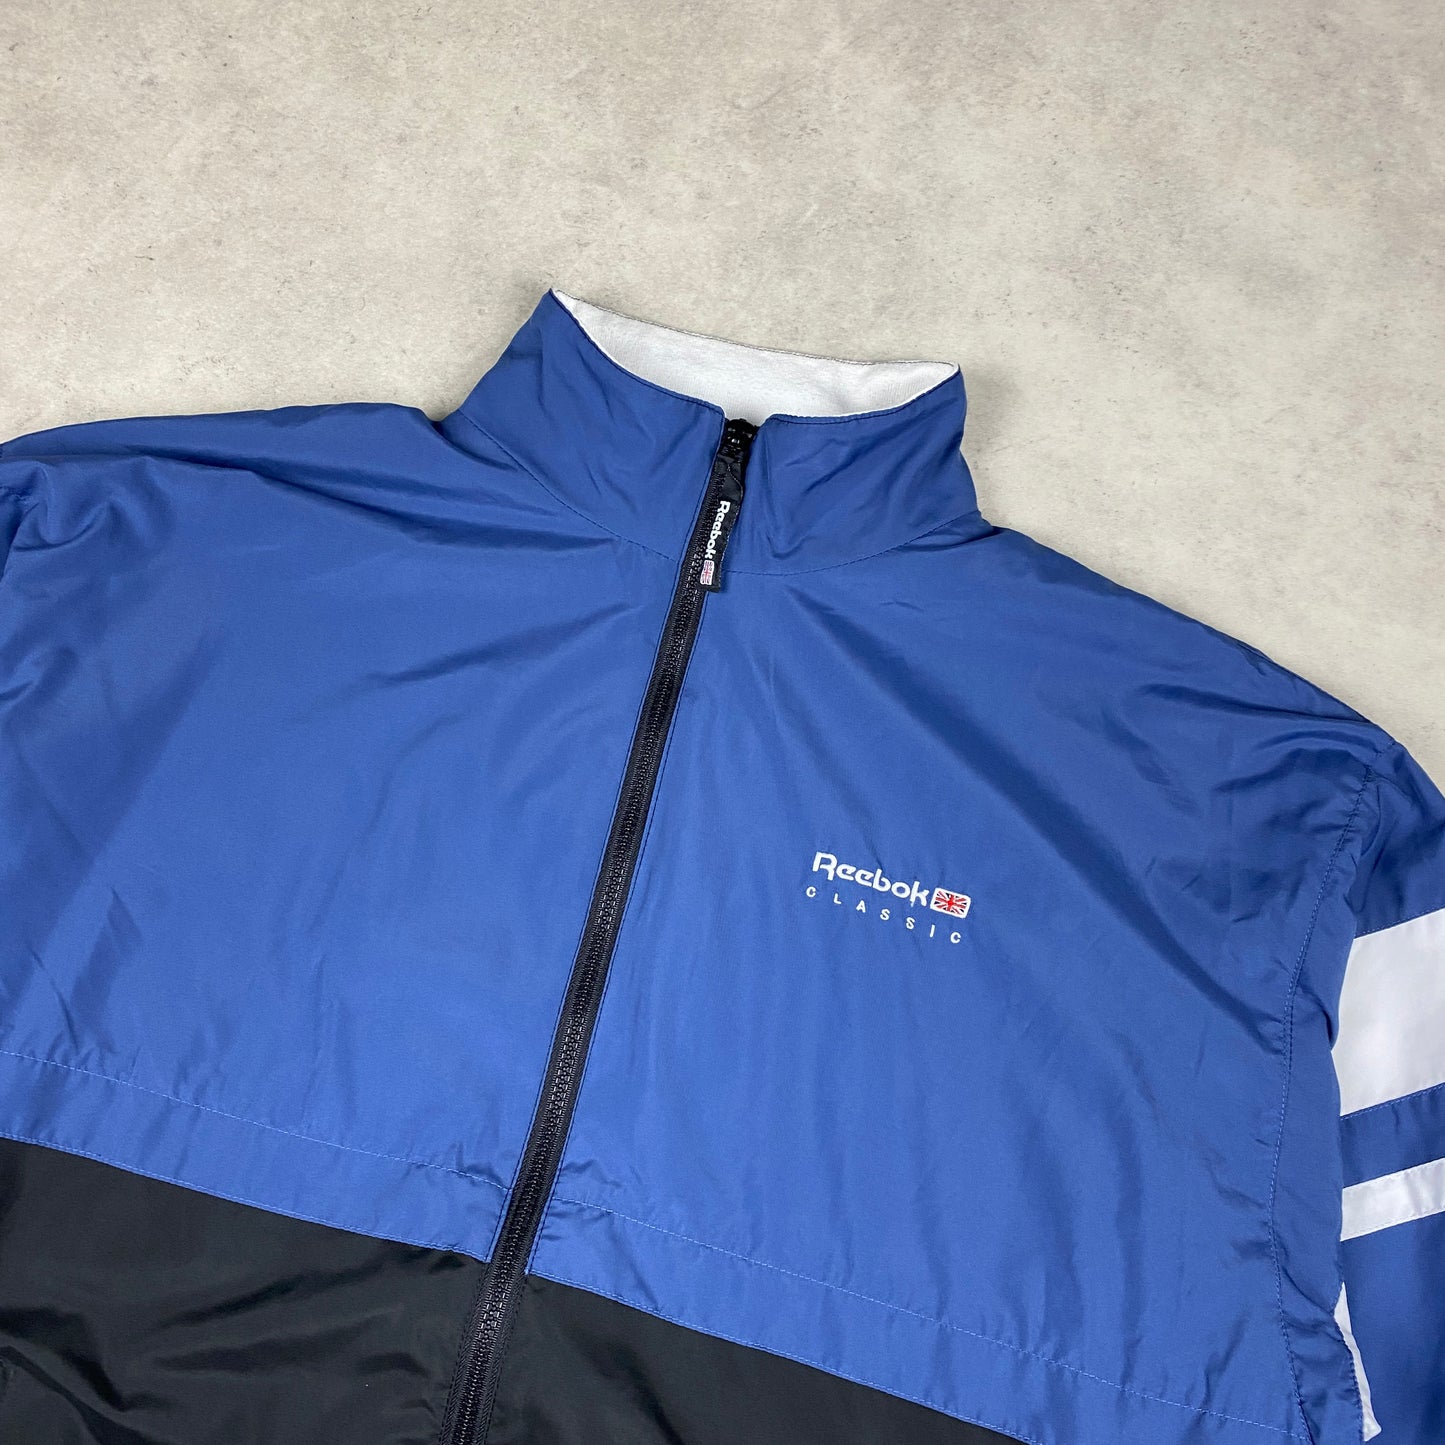 Reebok RARE track jacket (L-XL)